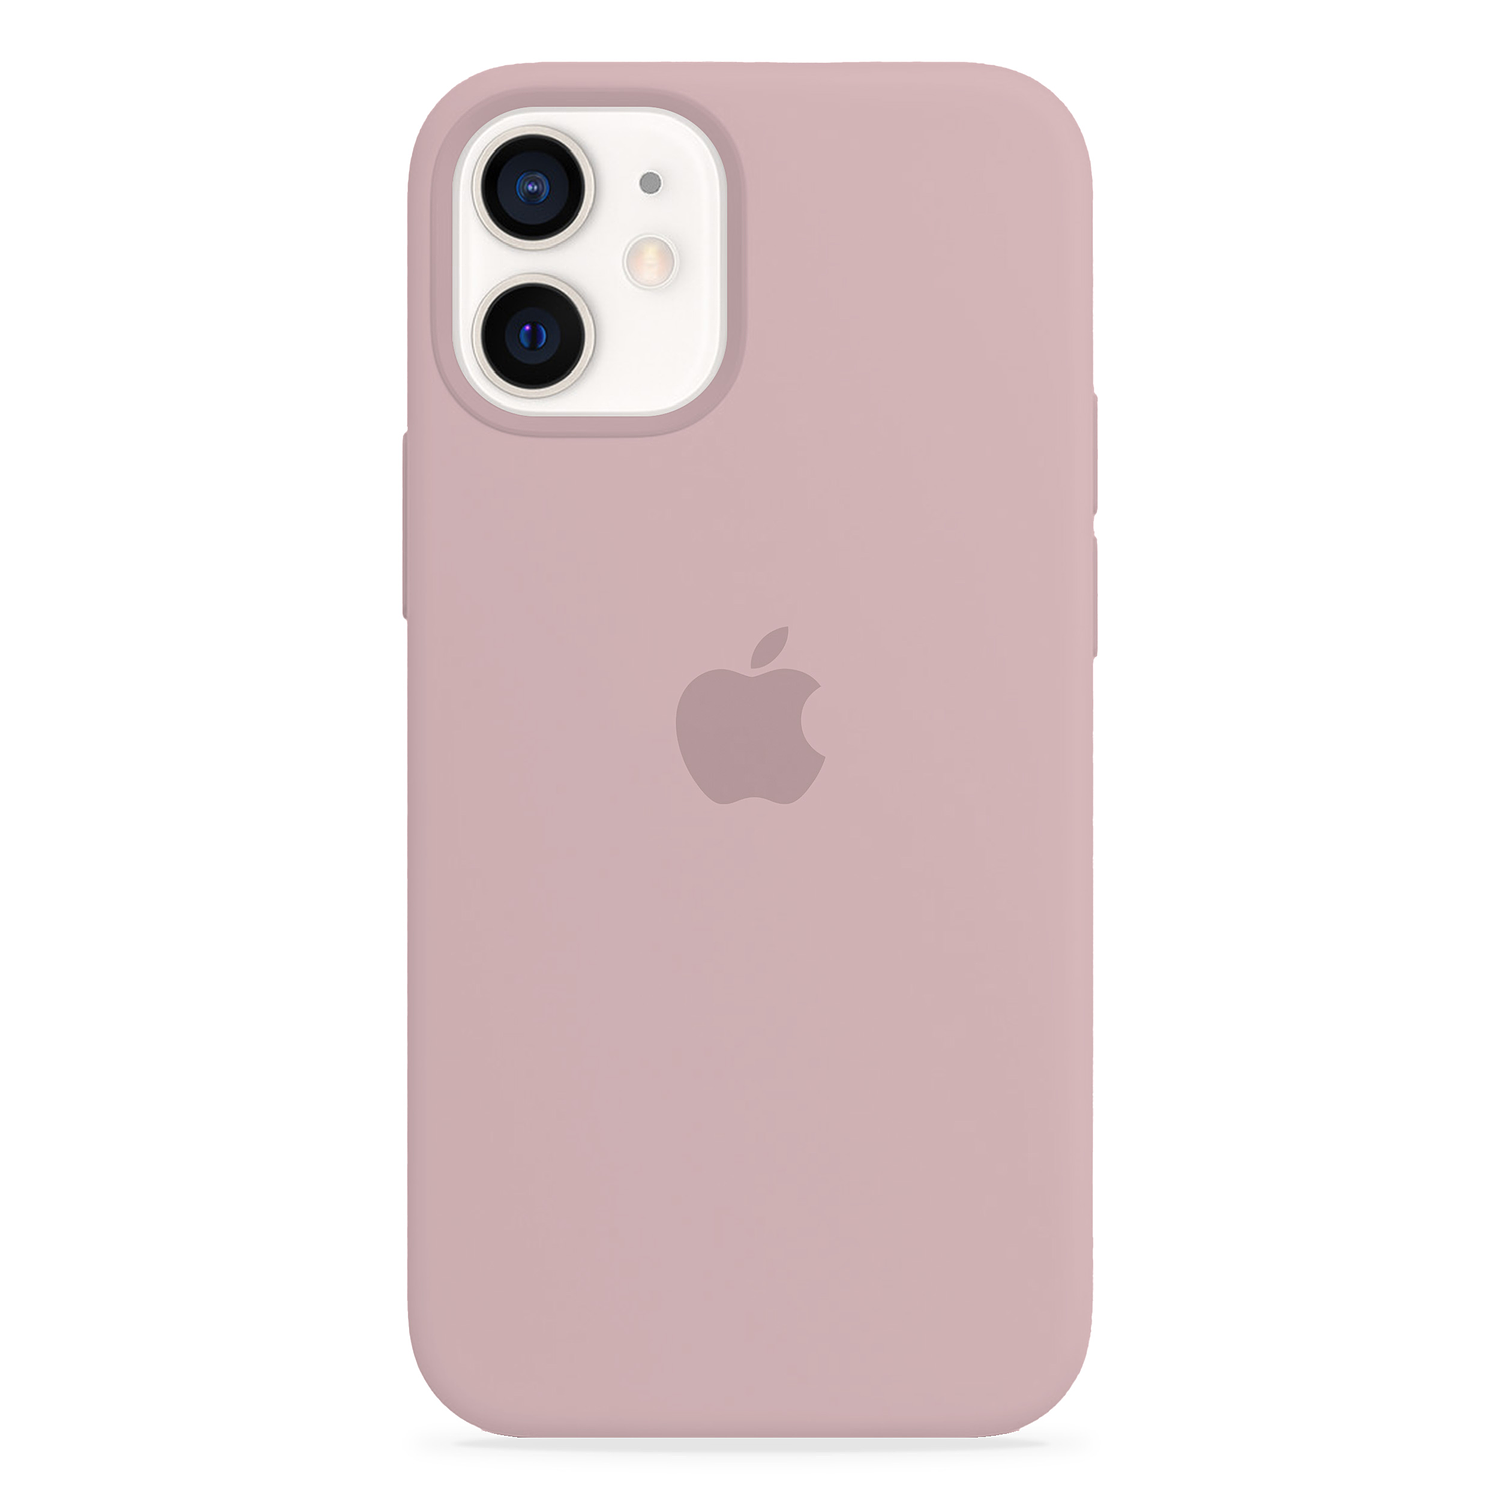 Carcasa de Silicona - iPhone 12 mini (Colores)